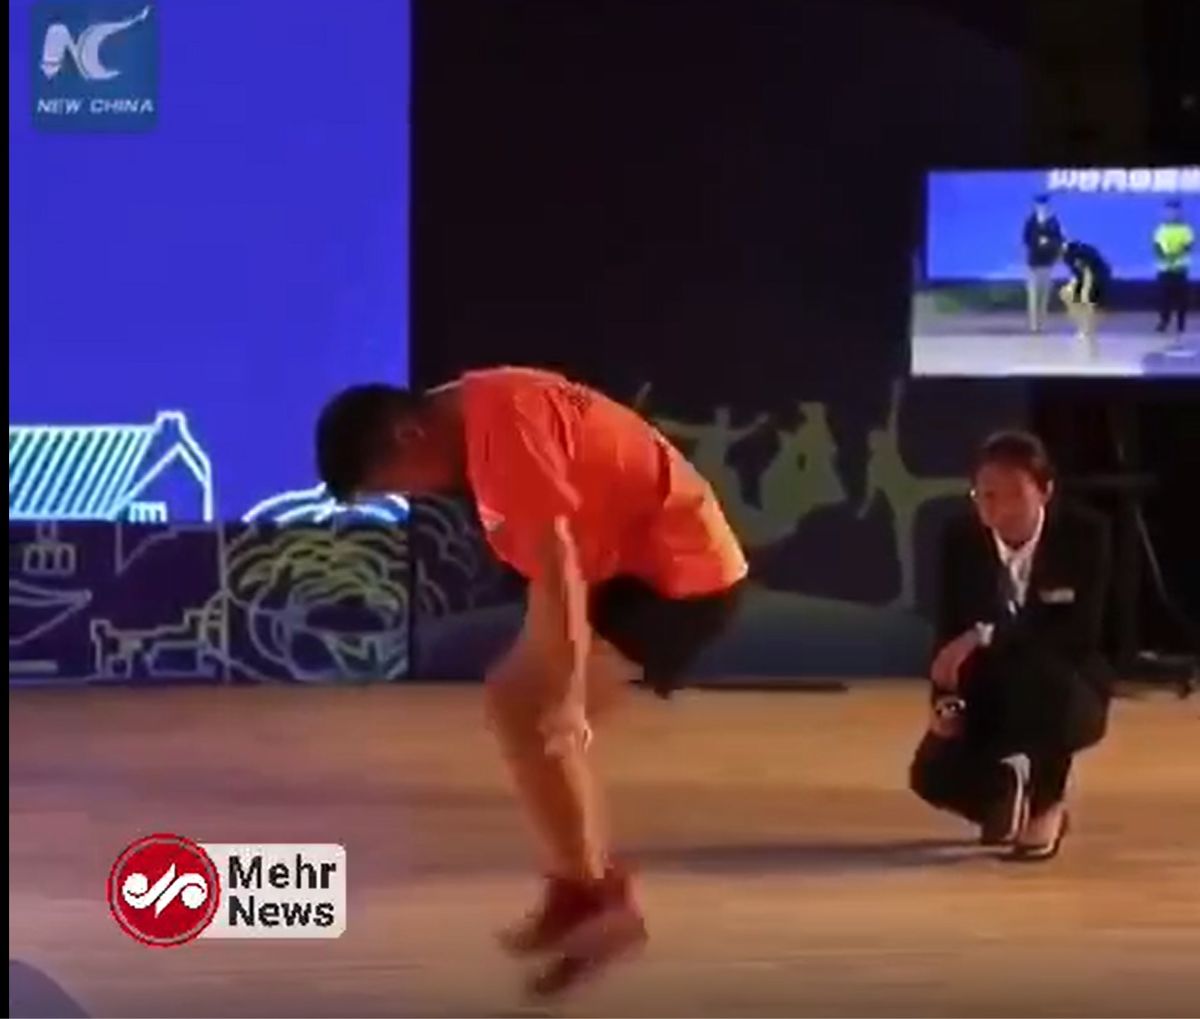 سرعت خارق العاده نوجوان چینی در پریدن از روی طناب